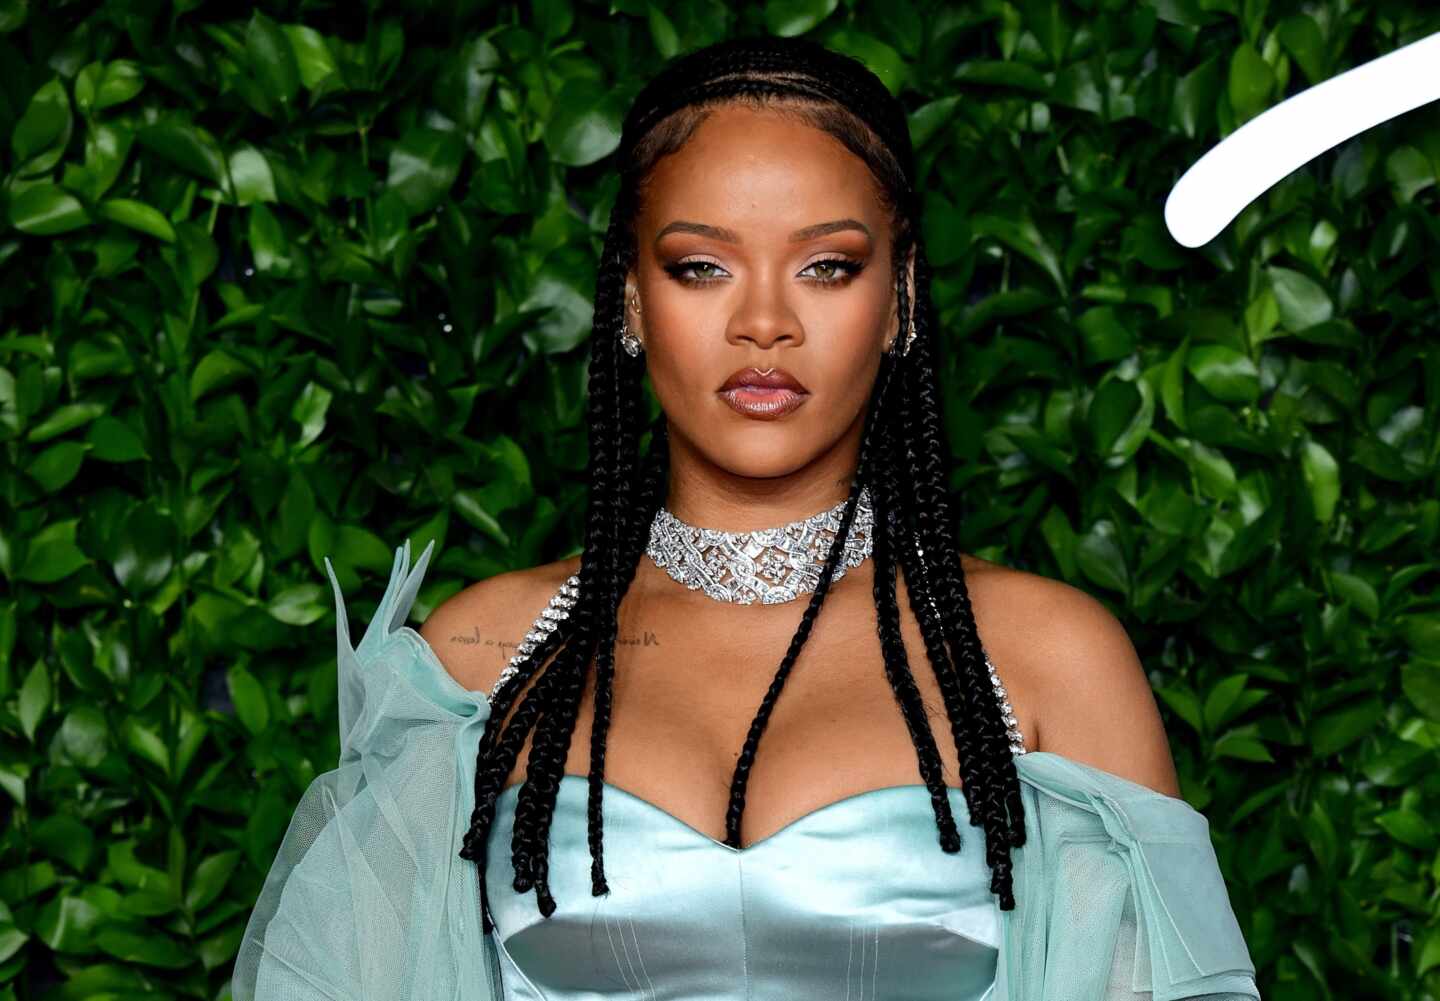 La manicura francesa més original de Rihanna